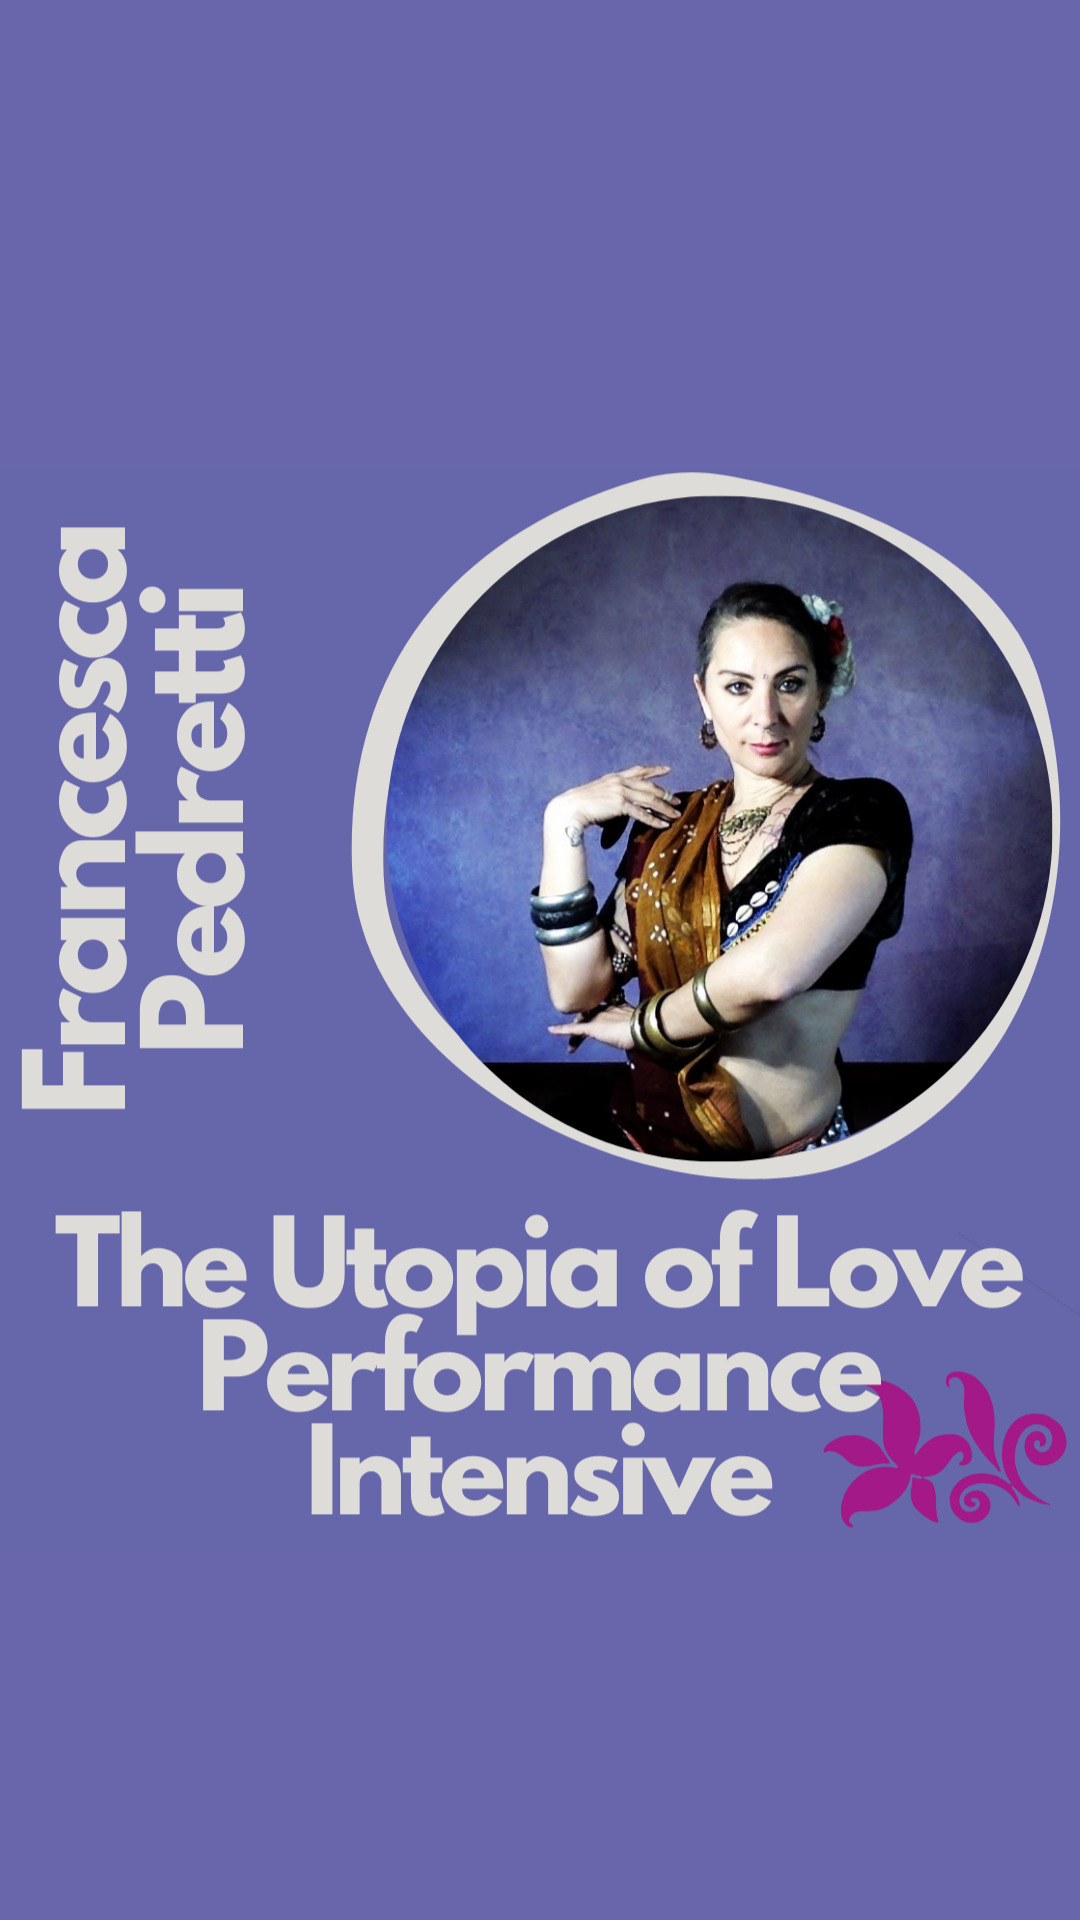 The Utopia of Love • Performance Intensive w/ Francesca Pedretti